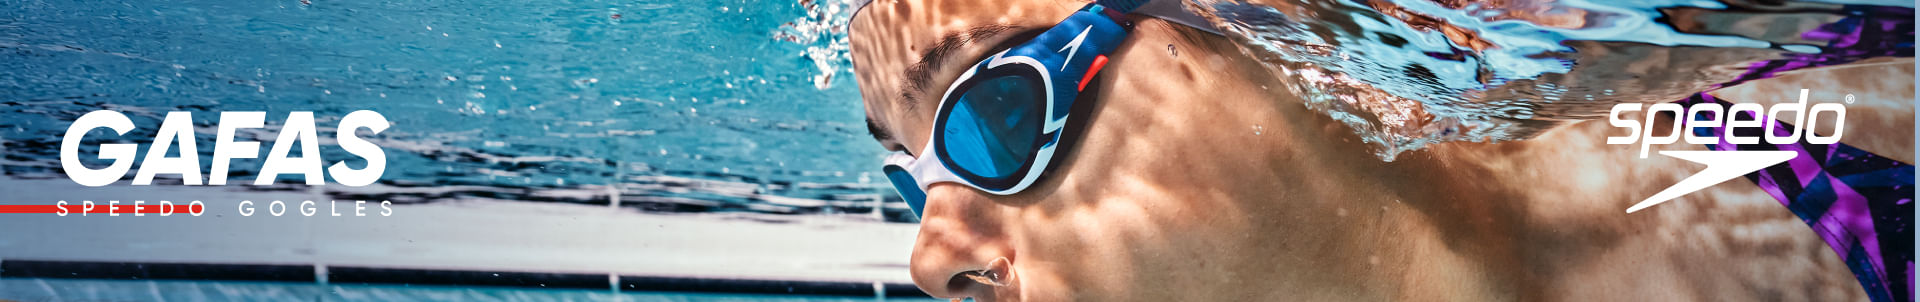 Arena The One - anteojos de natación para jóvenes y Adultos, Azul